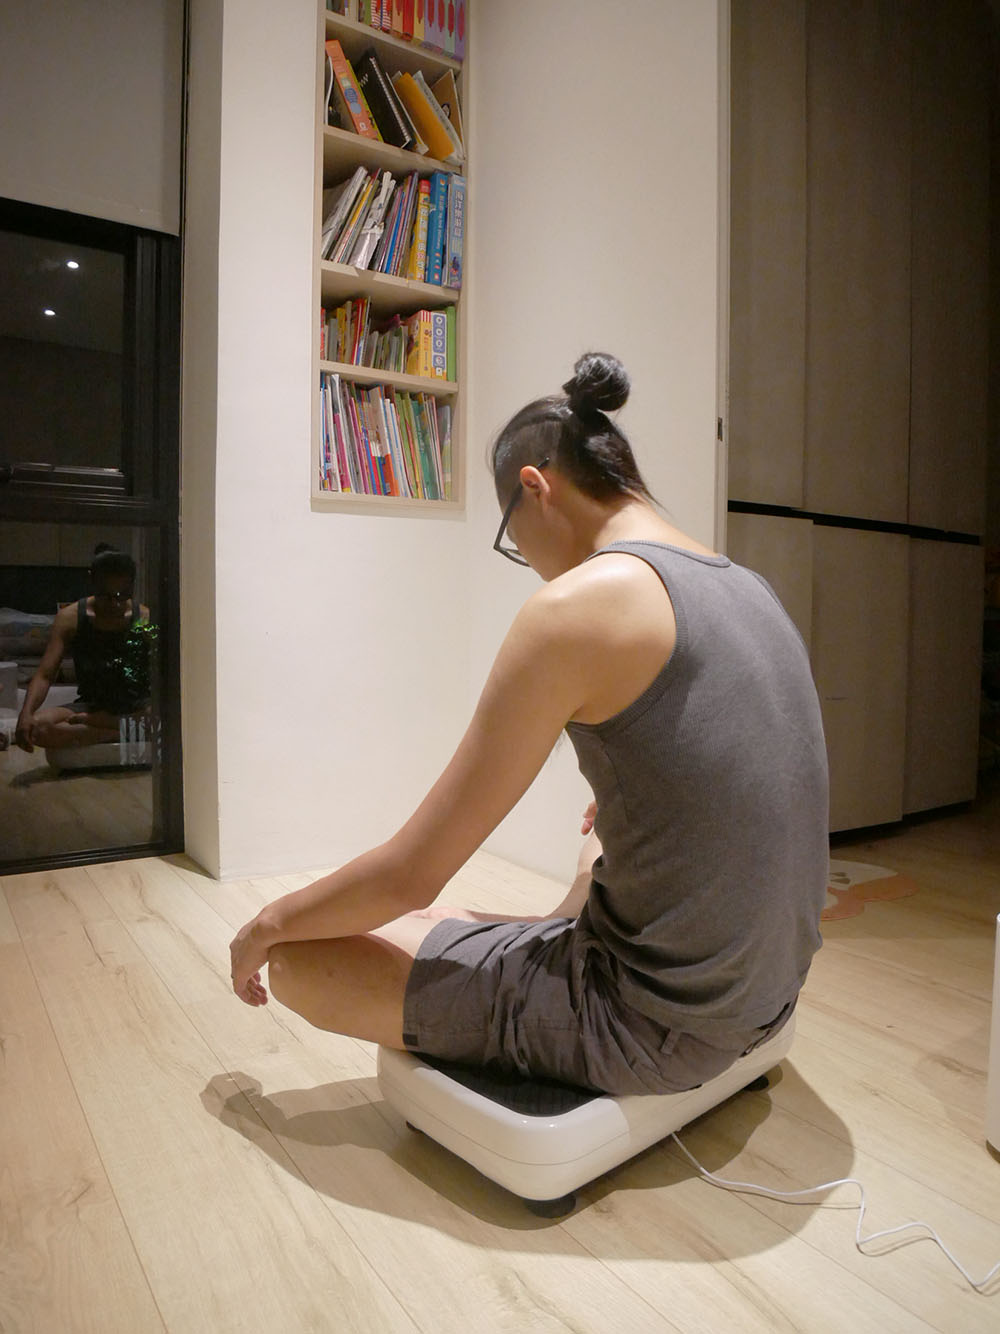 [啾團] MUZ vigor樂波垂直循環律動機-被動式懶人運動,在家站著坐著也可以輕鬆運動